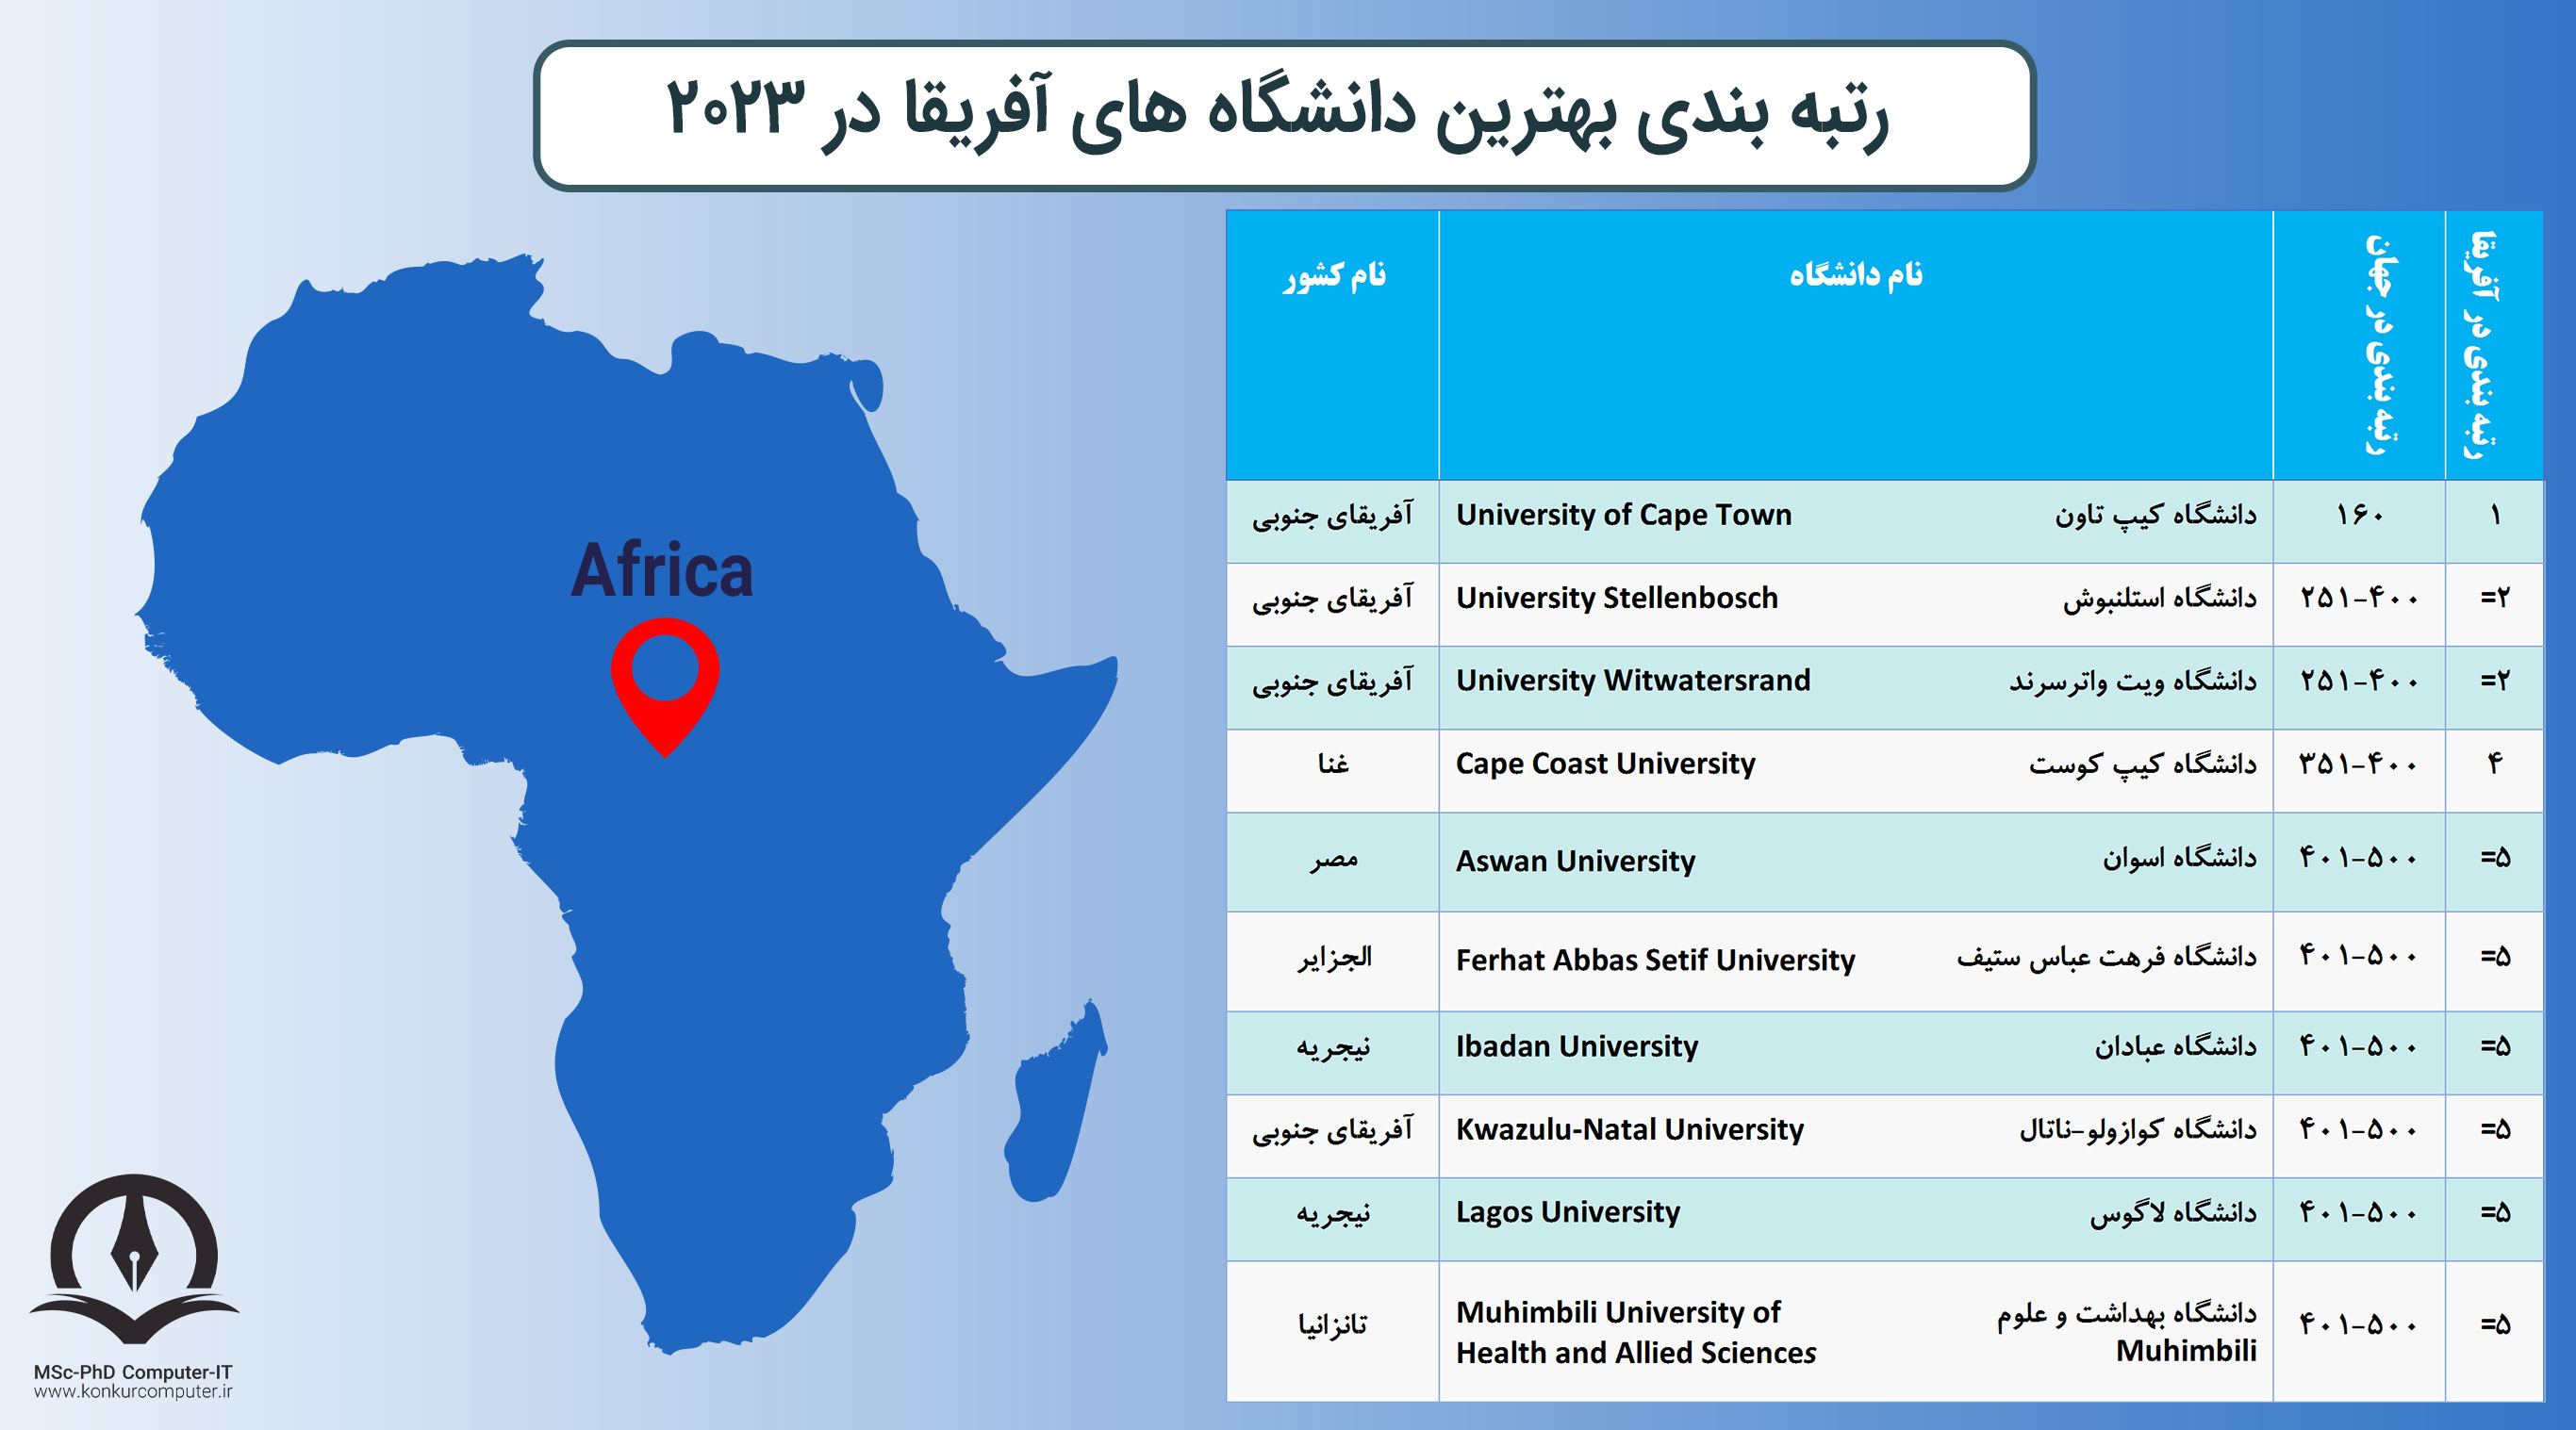 این تصویر جدول رتبه بندی بهترین دانشگاه های آفریقا در سال 2023 را نشان می دهد. ستون های این جدول به ترتیب شامل عدد رتبه بندی، نام دانشگاه به فارسی و انگلیسی و نام کشوری که دانشگاه در آن قرار دارد آورده شده است.